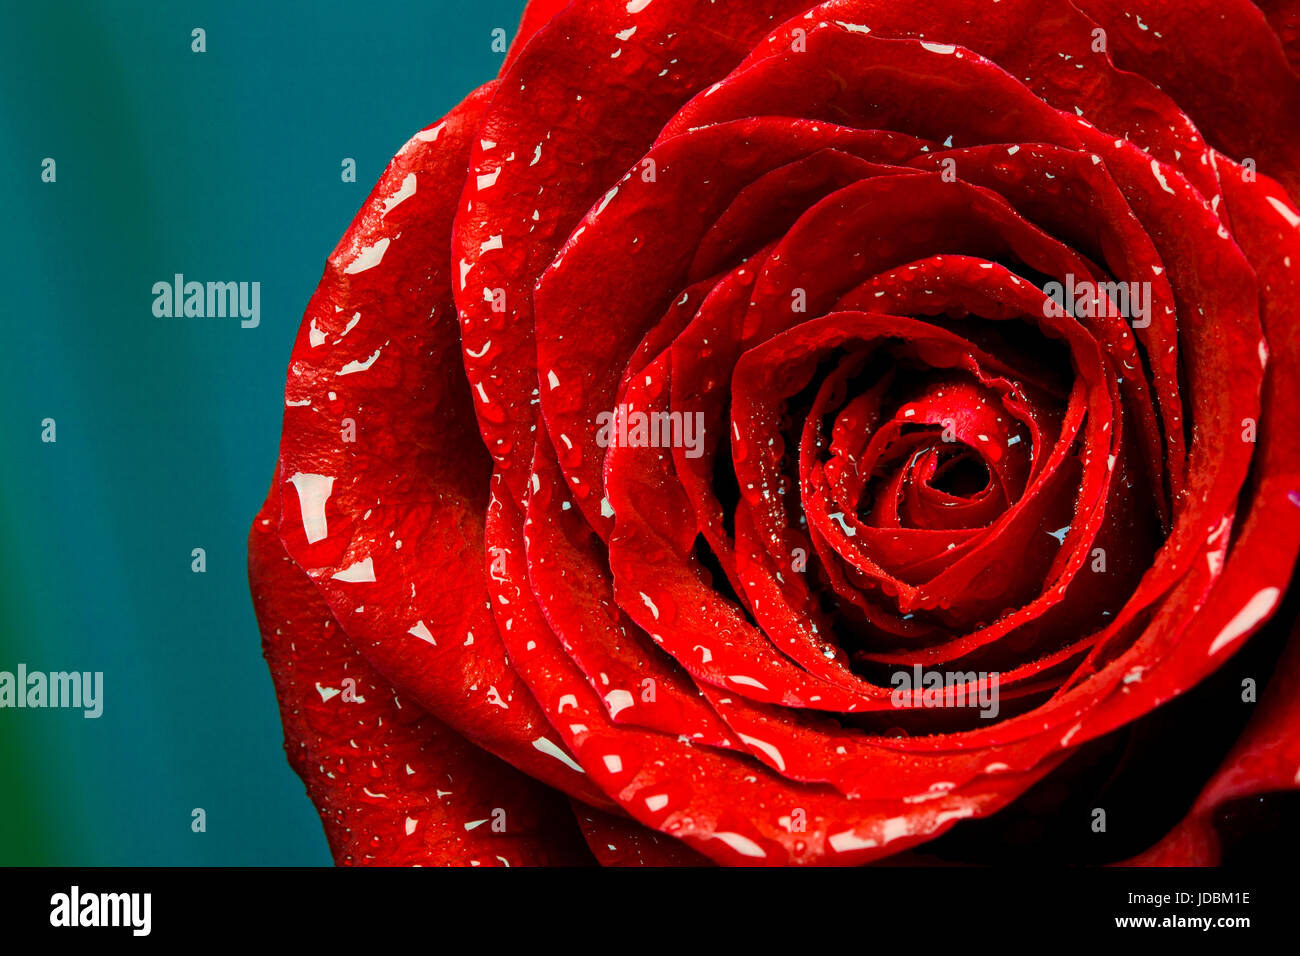 frische rote rose Knospe, die Blütenblätter von roten Rosen Stockfoto